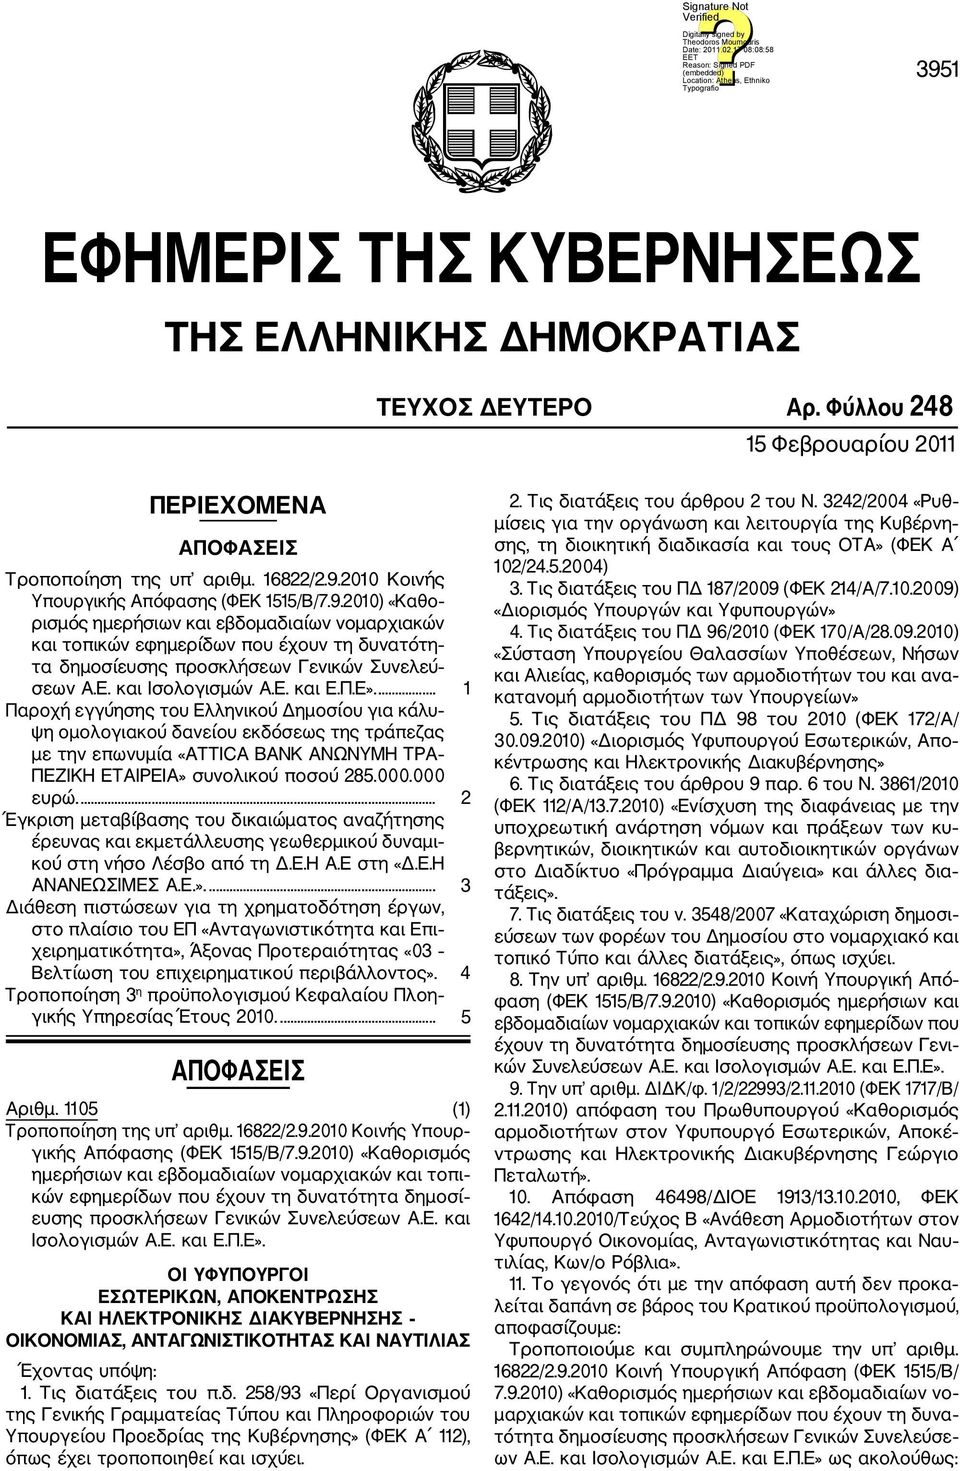 ... 1 Παροχή εγγύησης του Ελληνικού Δημοσίου για κάλυ ψη ομολογιακού δανείου εκδόσεως της τράπεζας με την επωνυμία «ATTICA BANK ΑΝΩΝΥΜΗ ΤΡΑ ΠΕΖΙΚΗ ΕΤΑΙΡΕΙΑ» συνολικού ποσού 285.000.000 ευρώ.